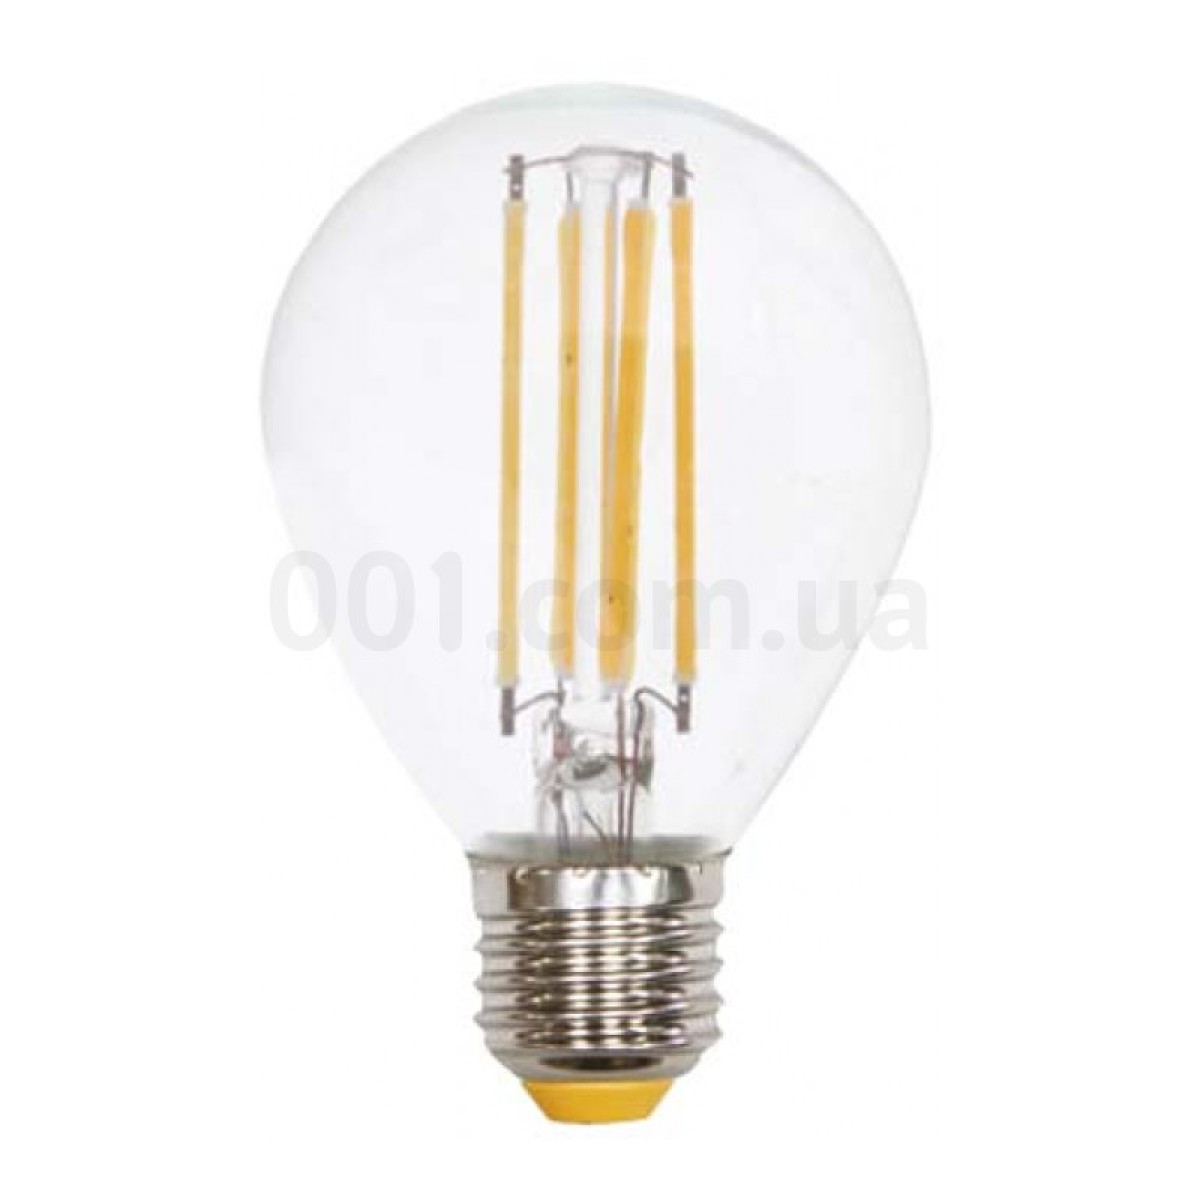 Світлодіодна лампа LB-61 G45 (куля) філамент 4Вт 2700K E27, Feron 98_98.jpg